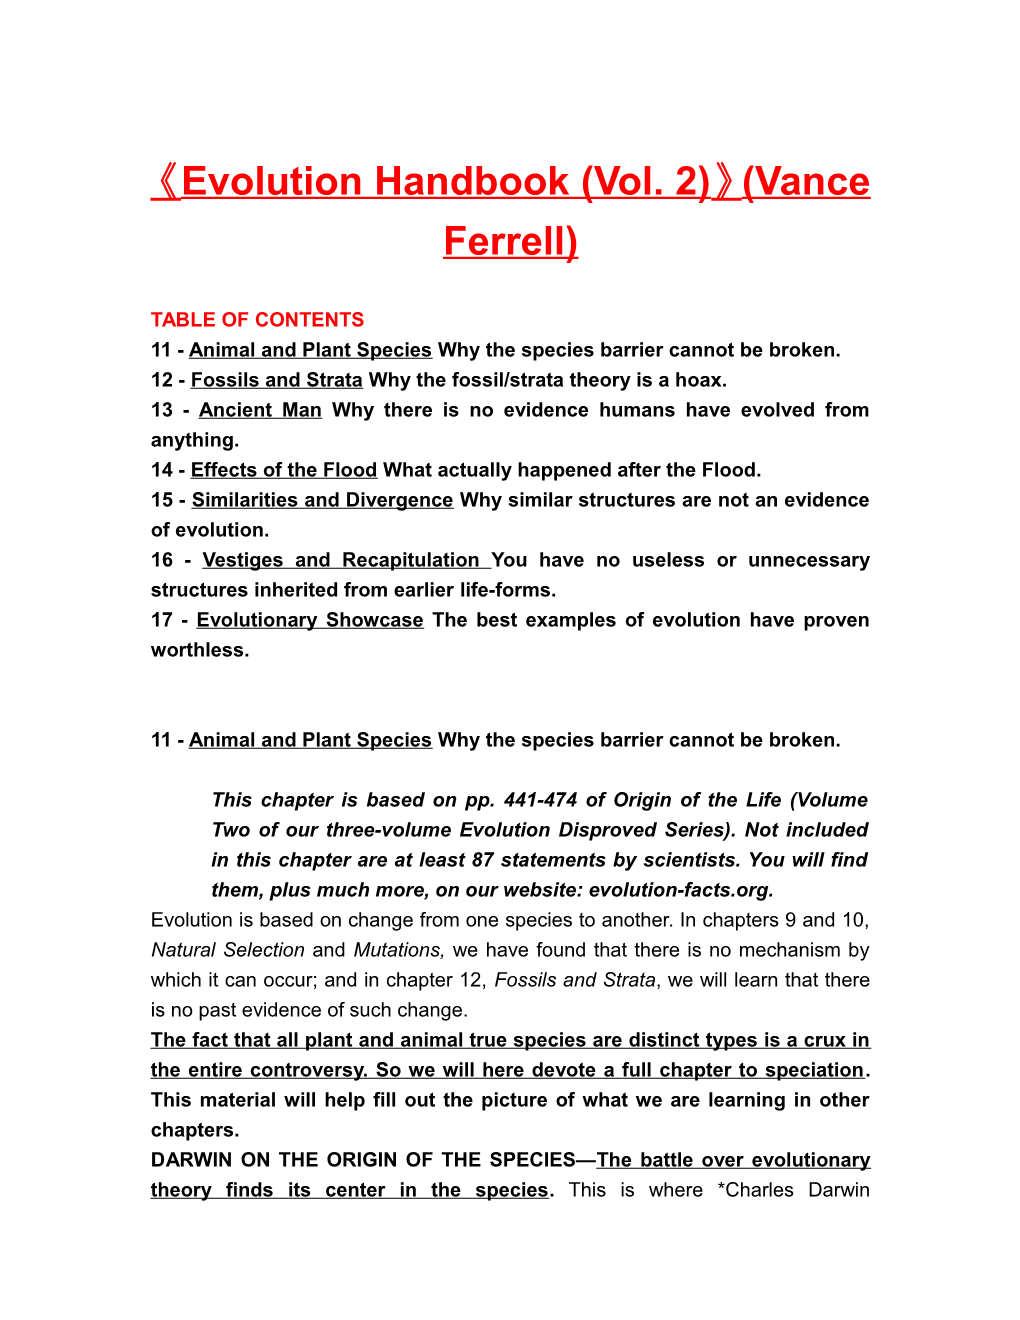 Evolution Handbook (Vol. 2) (Vance Ferrell)